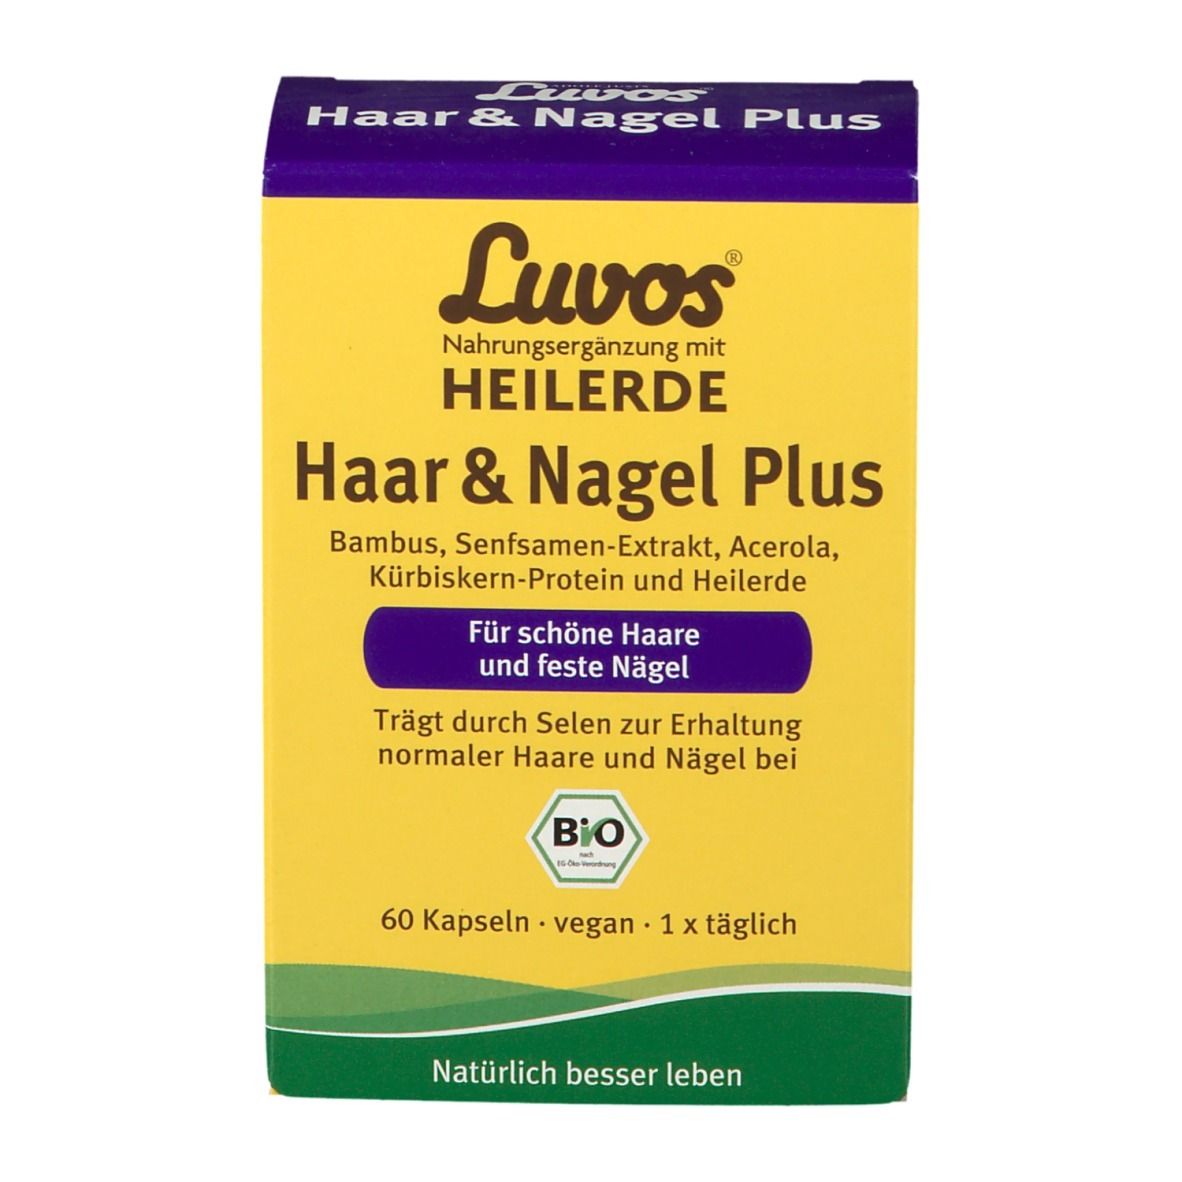 Luvos® Heilerde Bio Haar & Nagel Plus